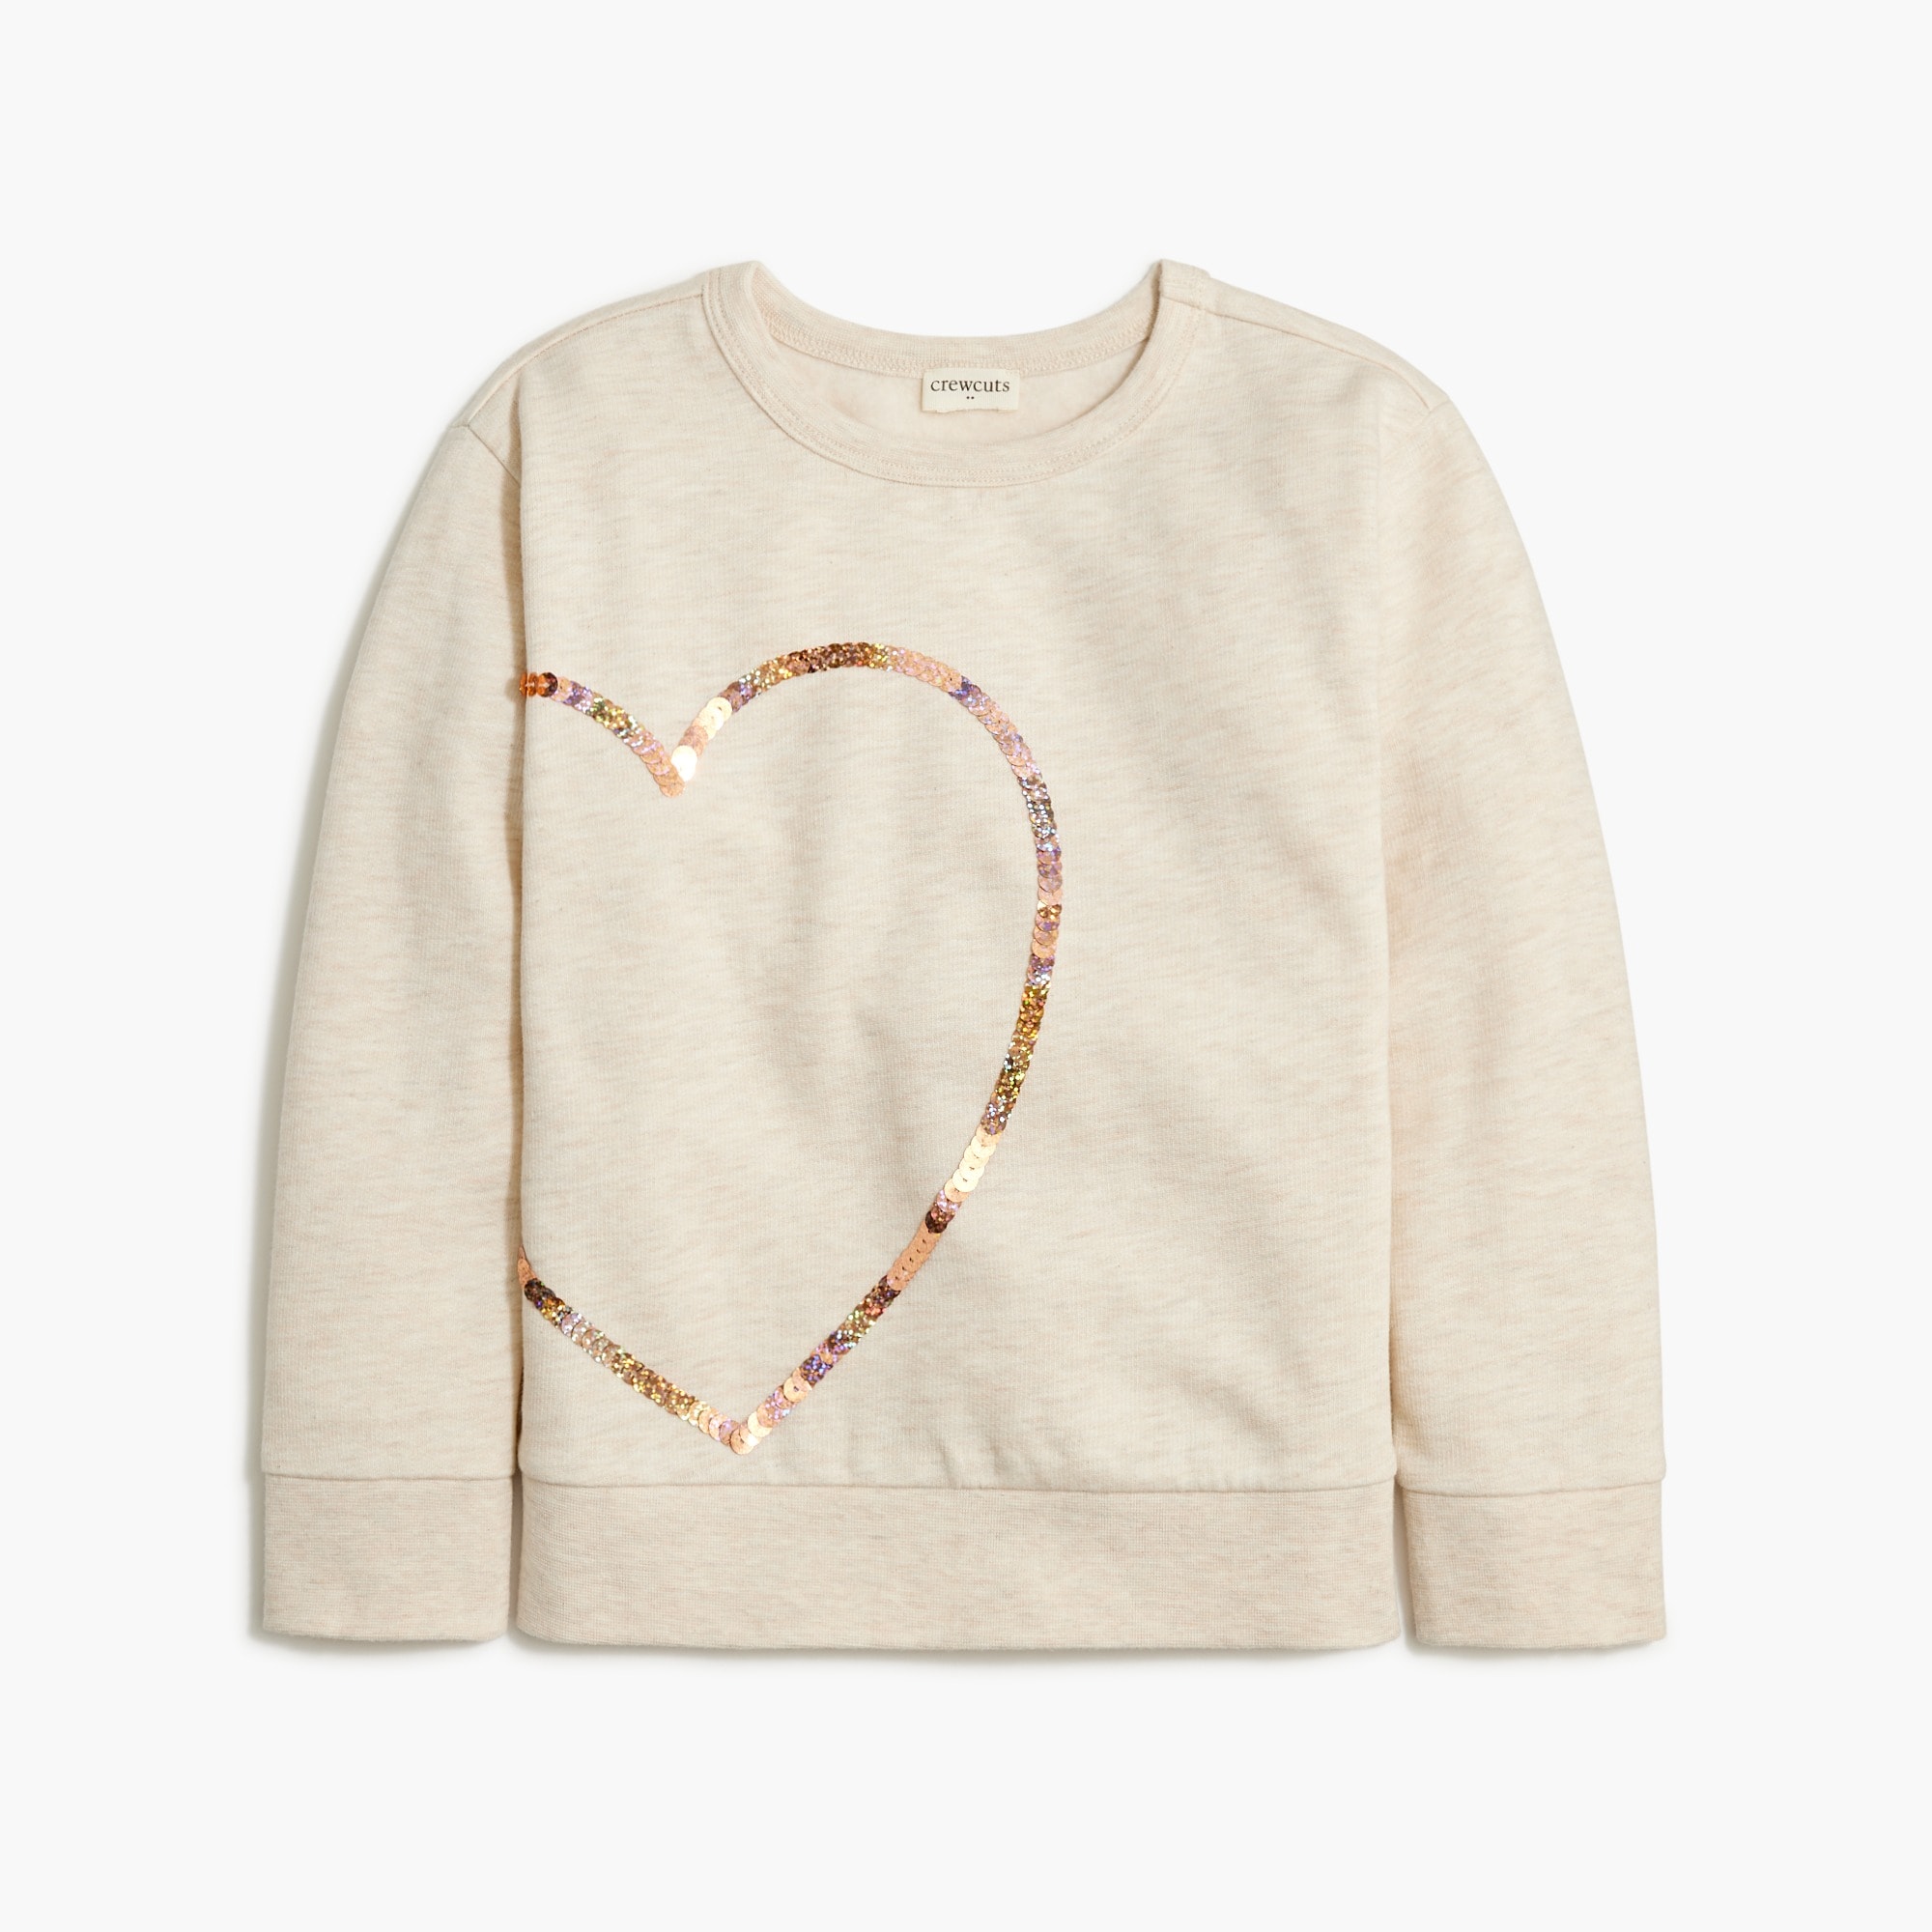 Girls' heart graphic sweatshirt